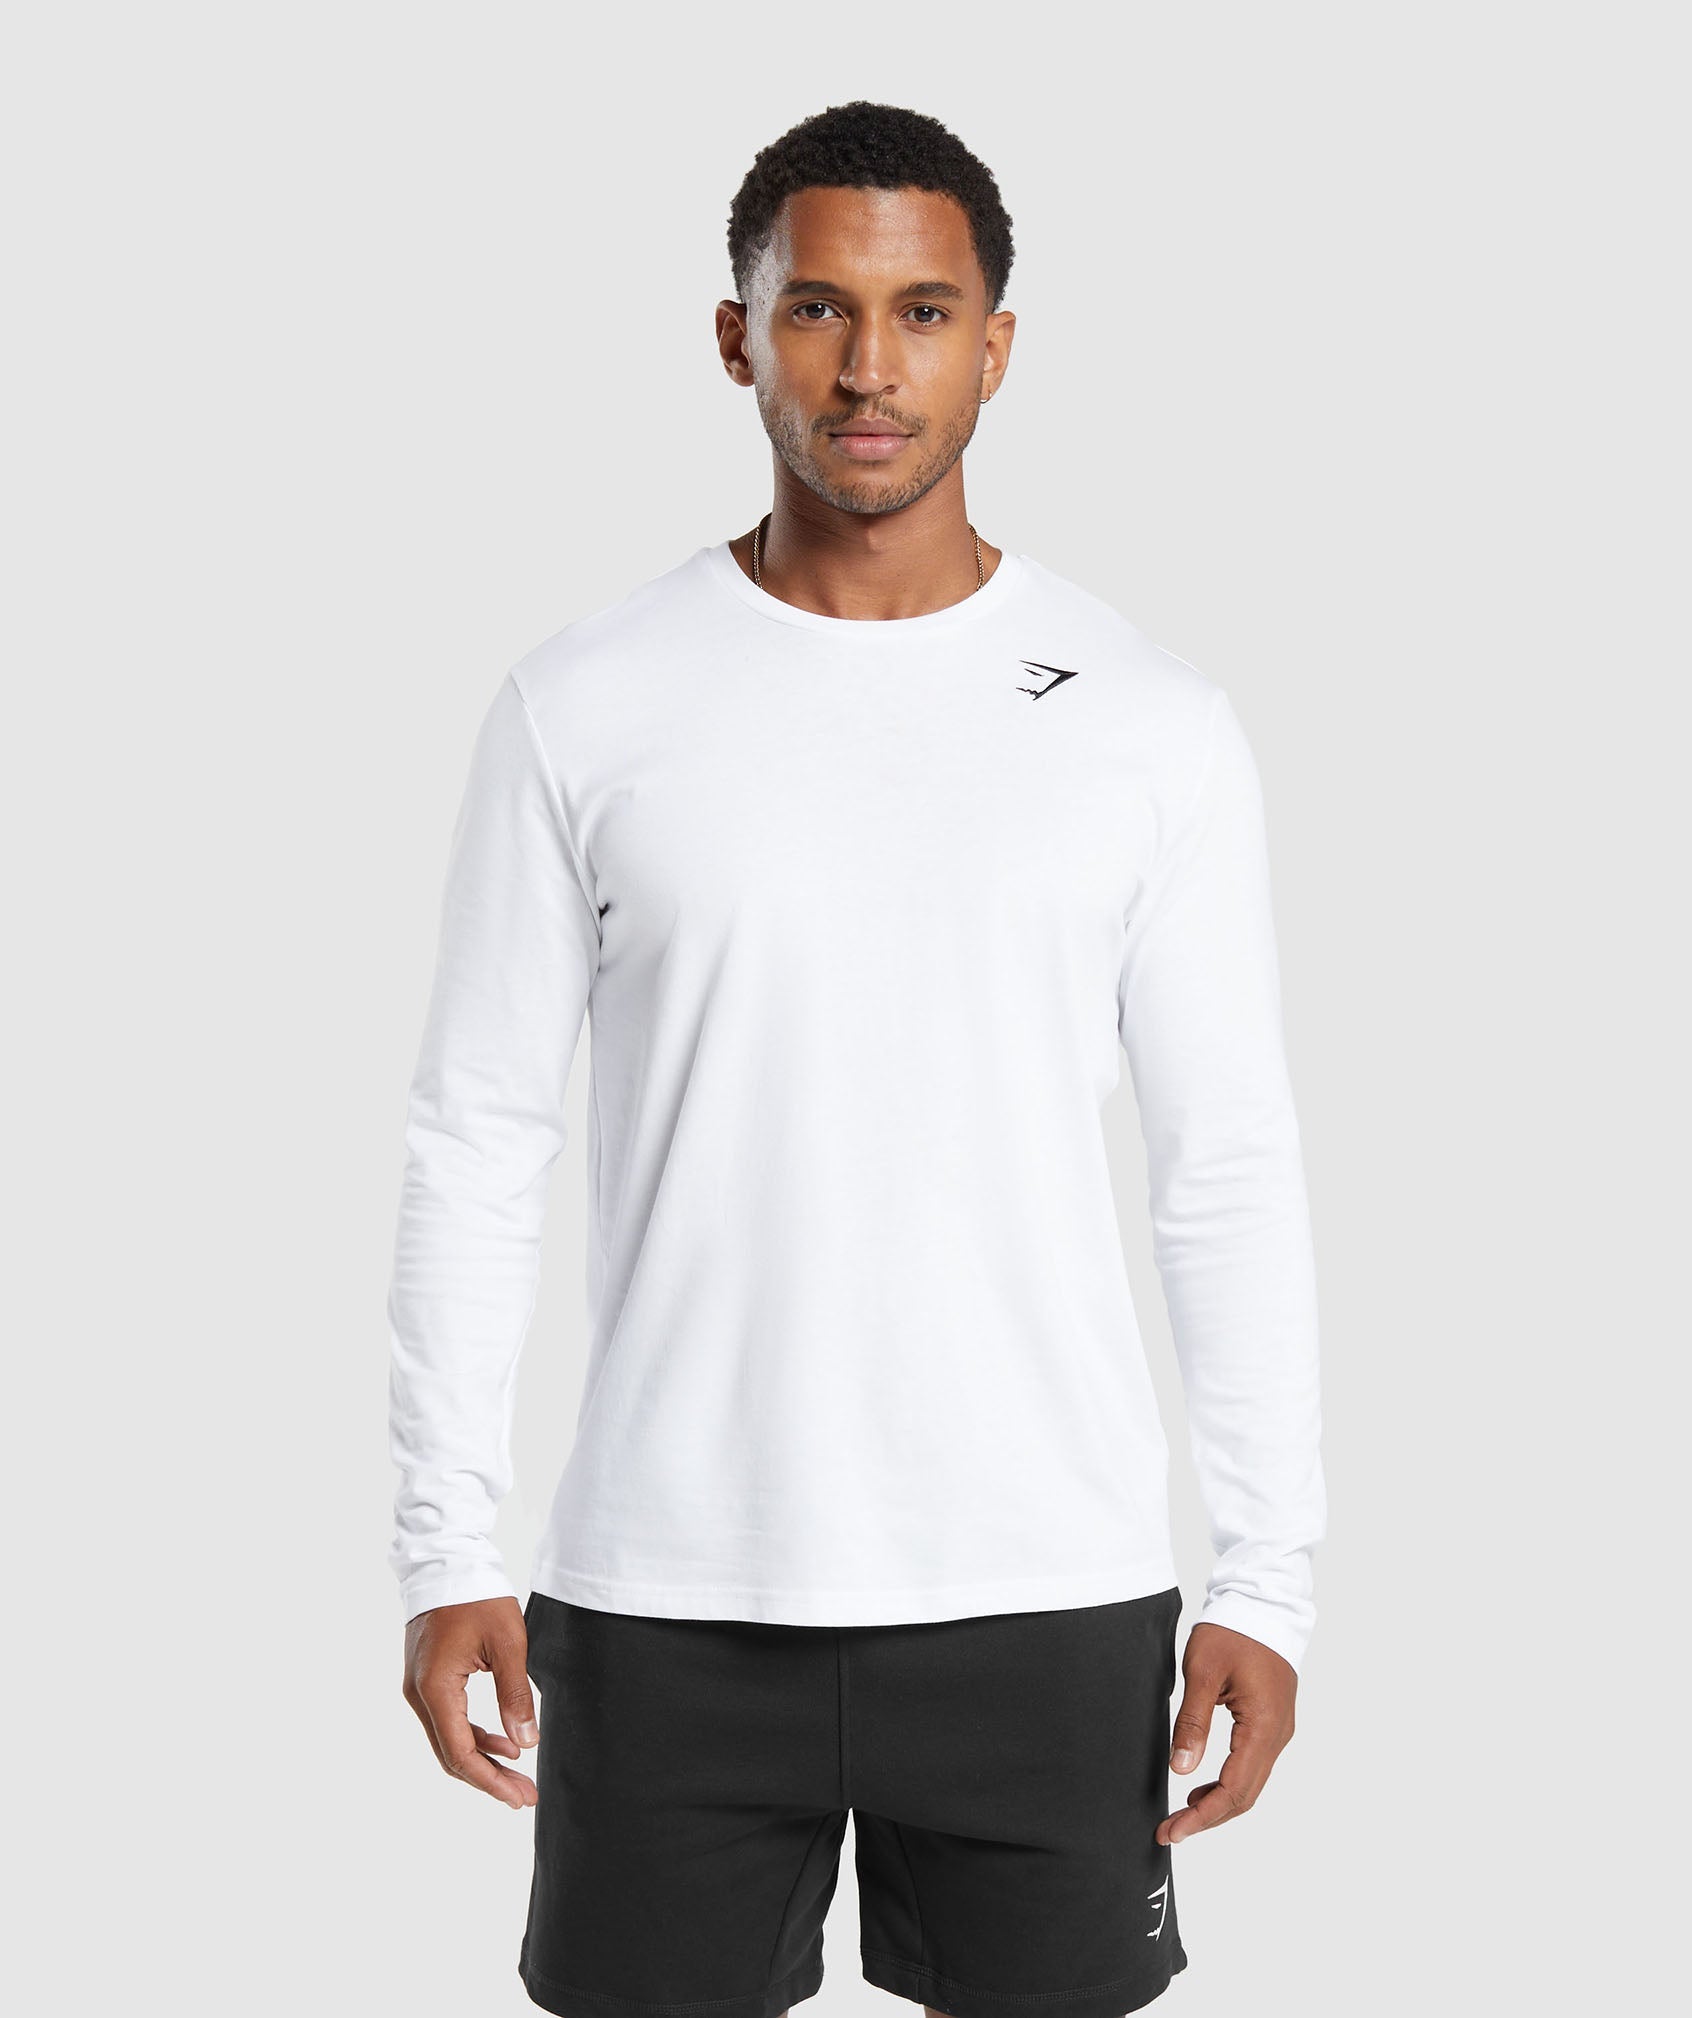 Gymshark Crest Long Sleeve T-Shirt - White